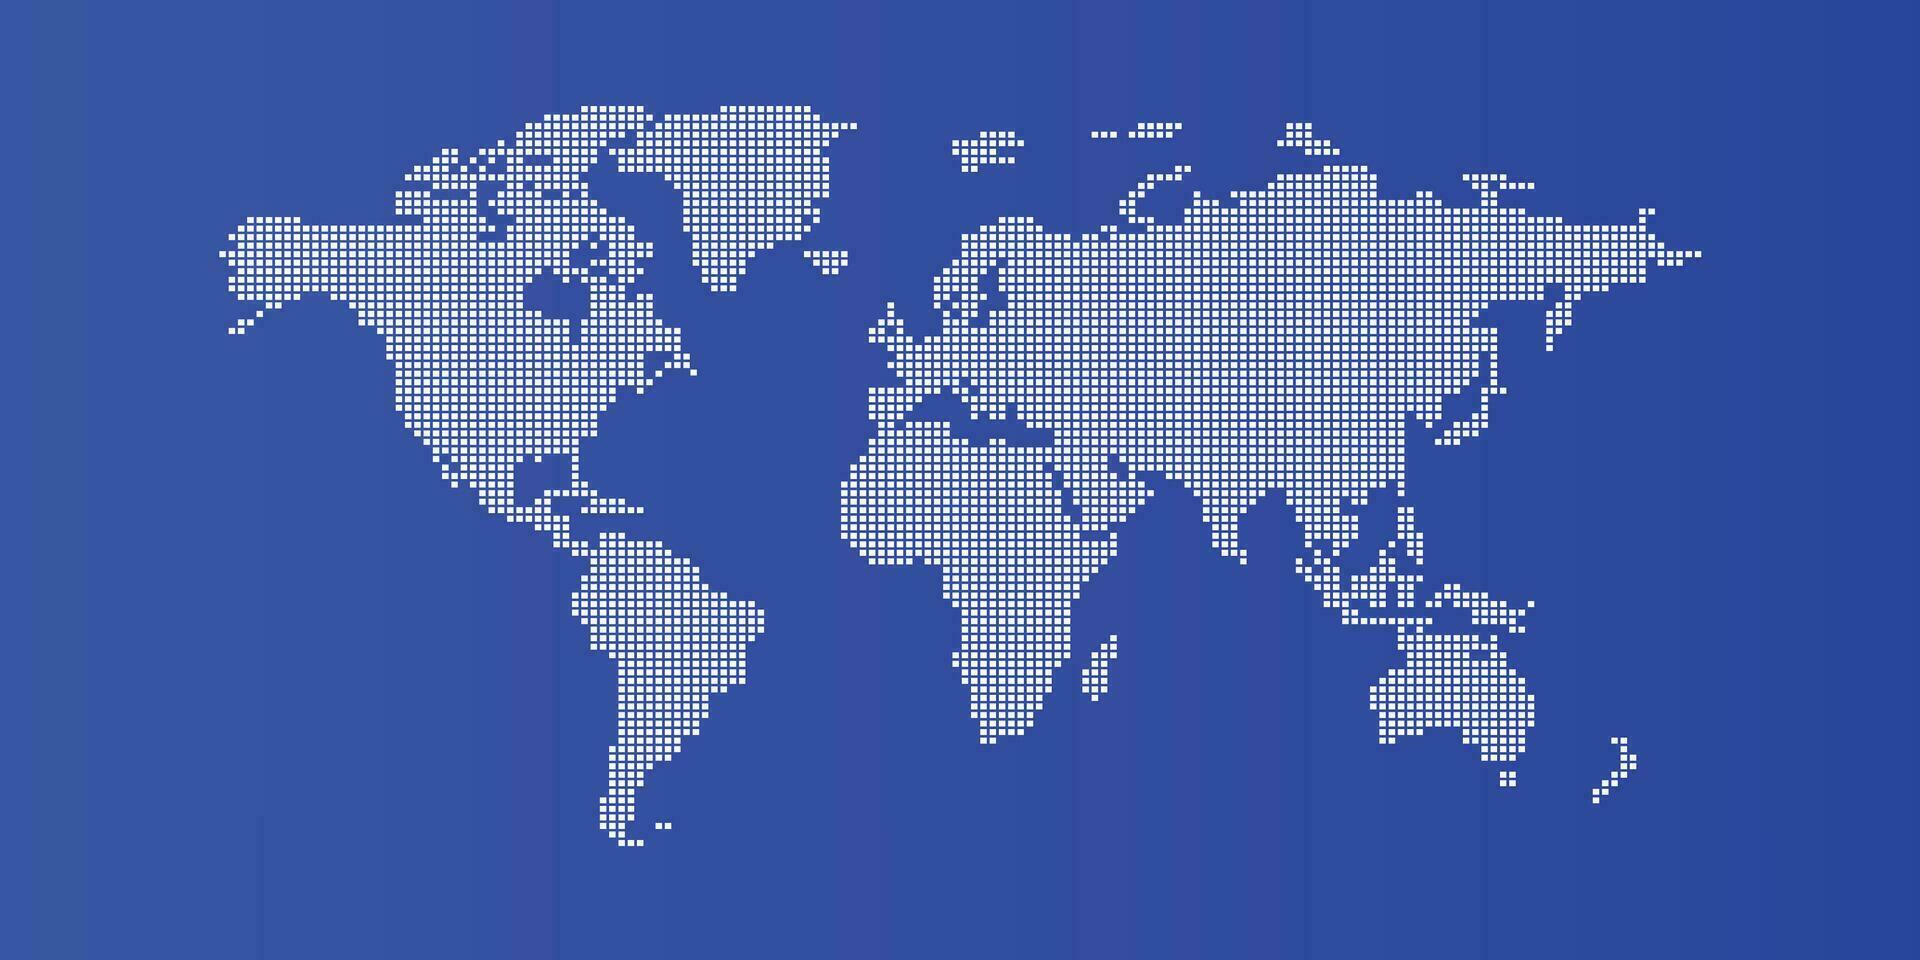 azul fondo de el mundo mapa vector